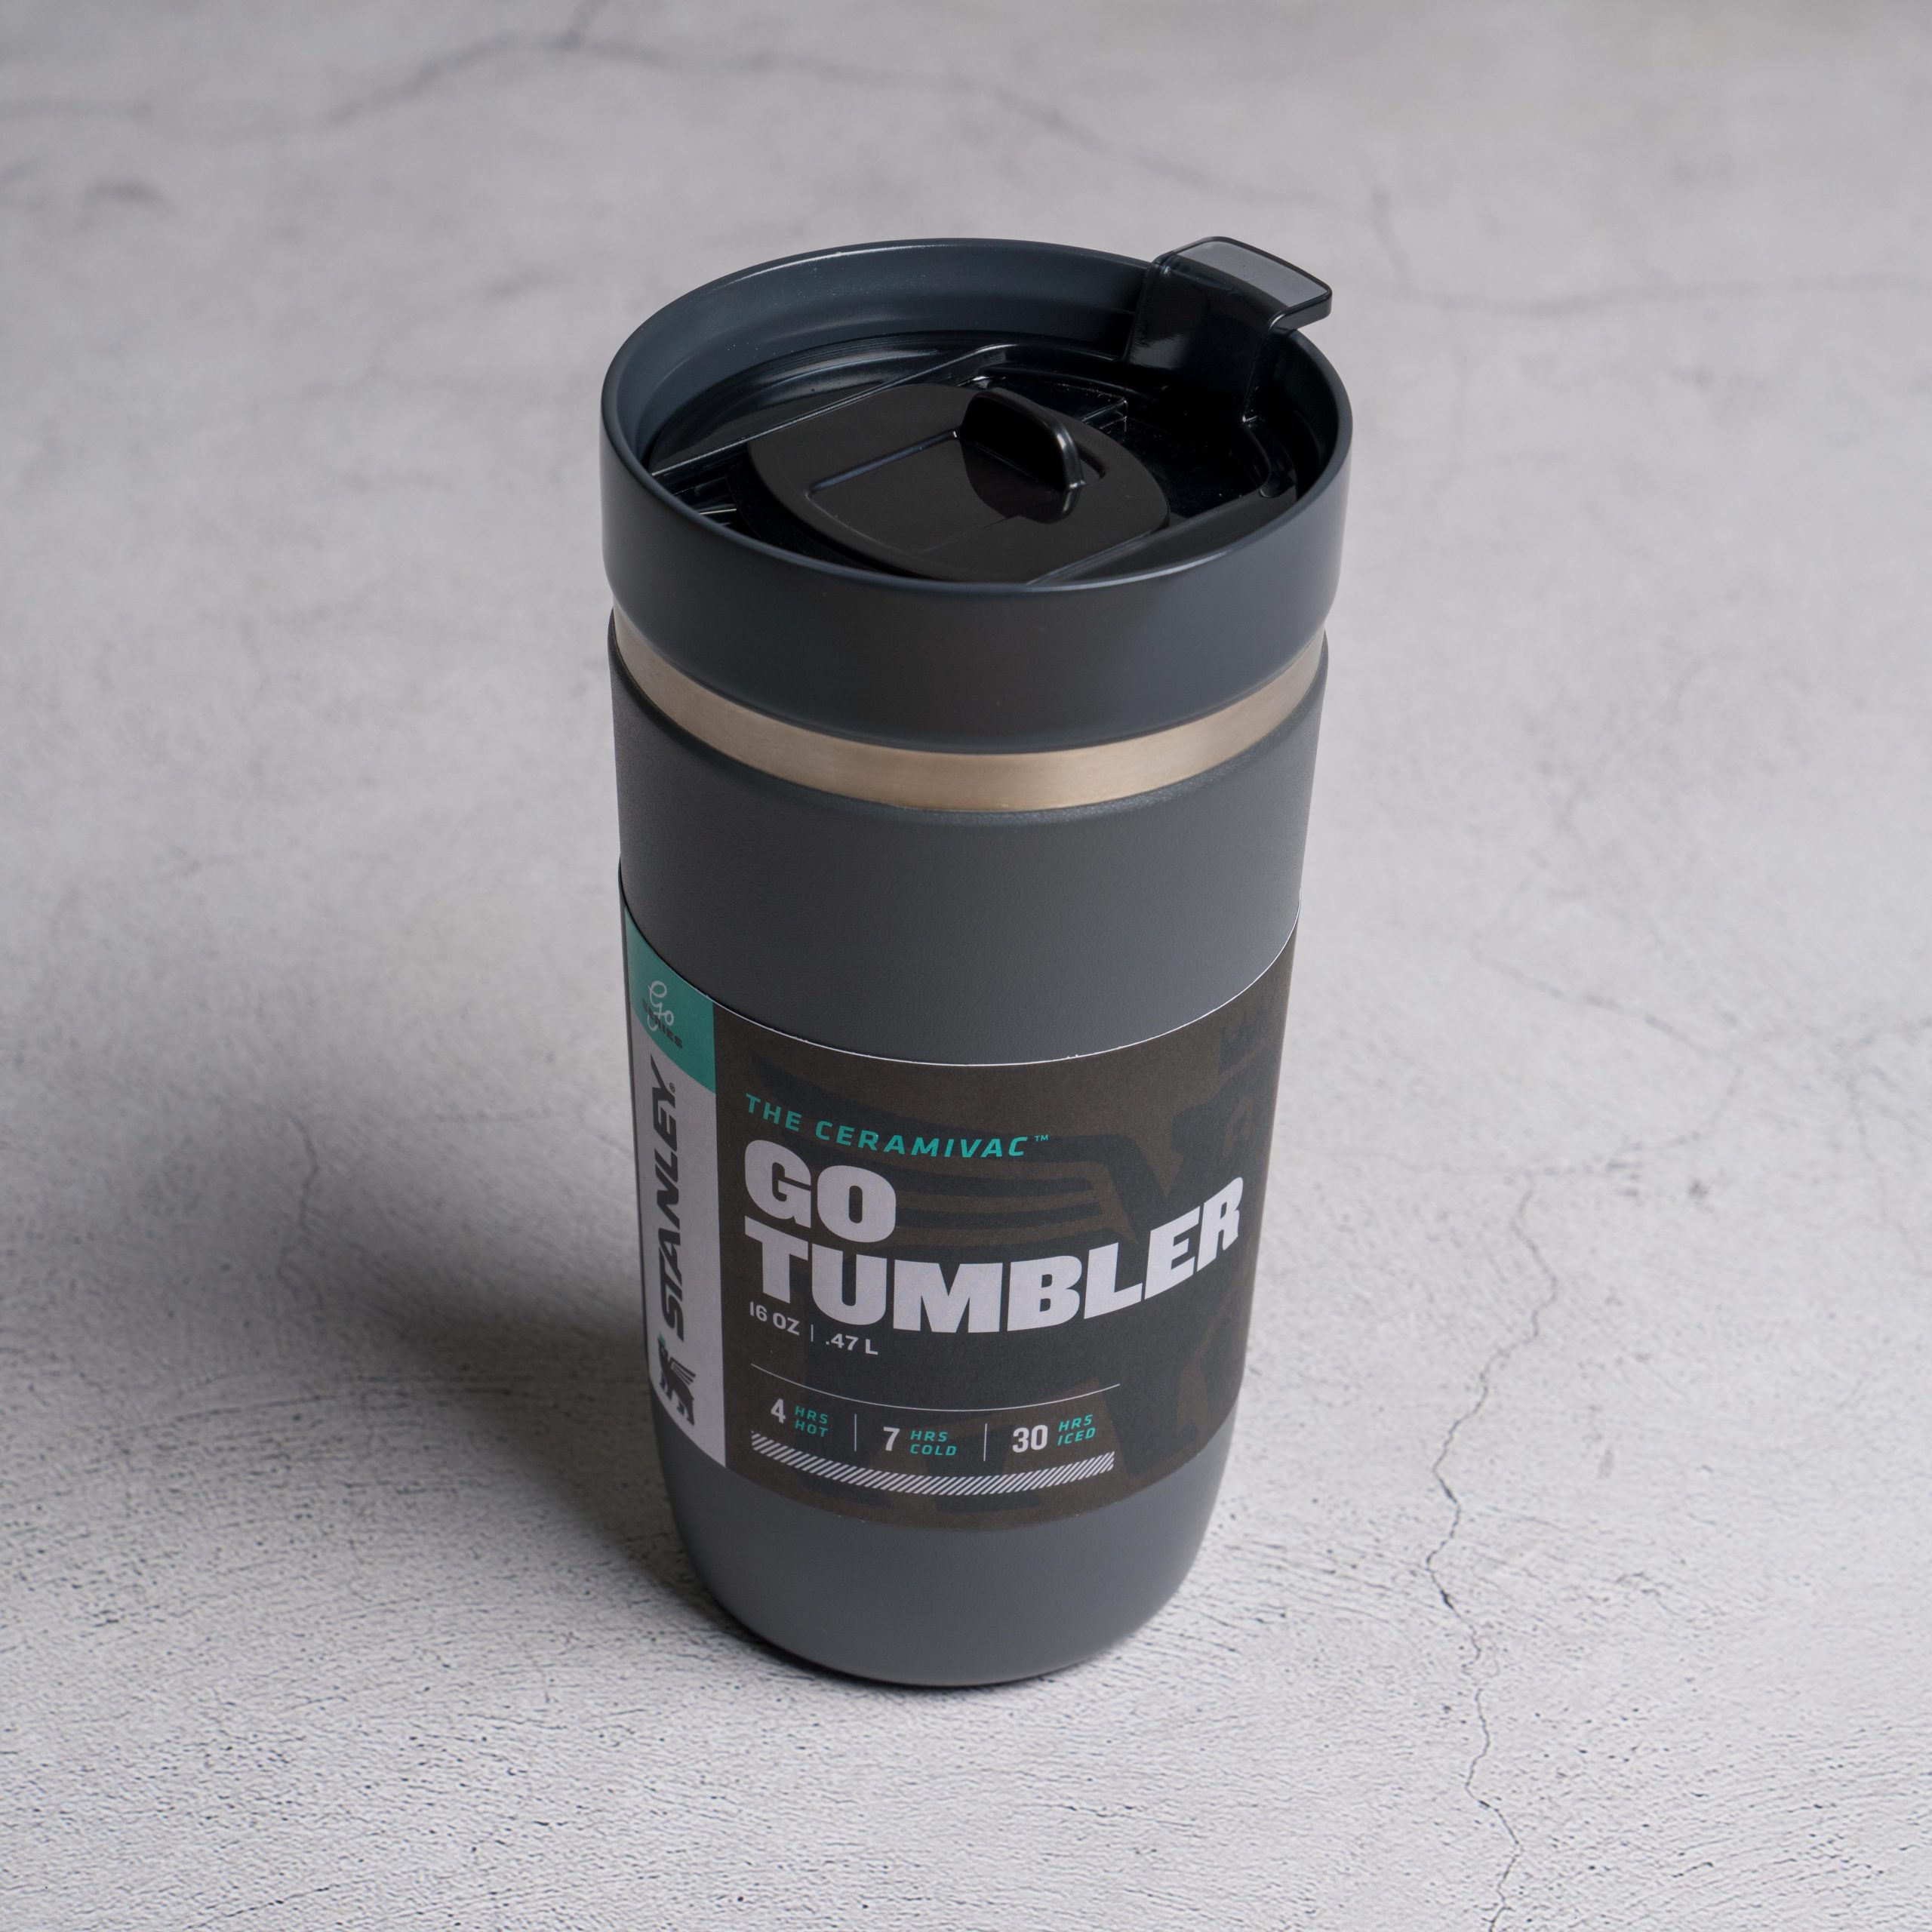 Stanley Ceramivac GO Tumbler - Đóng/Mở chốt gạt và uống nước chỉ bằng một tay.